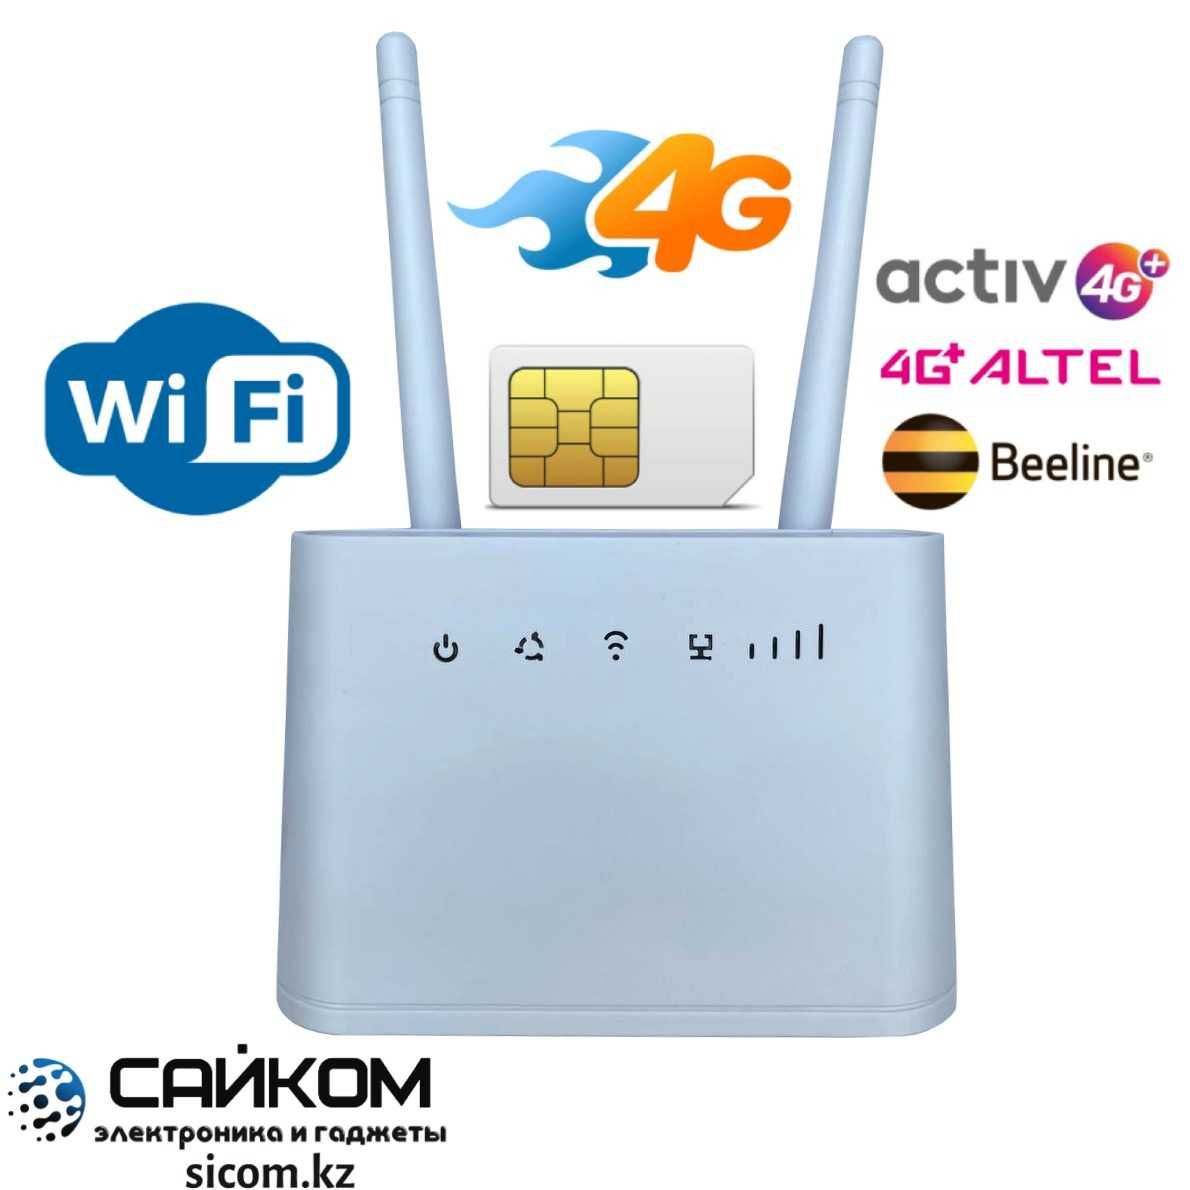 4G WiFi Модем Работает от любой SIM карты Казахстана Гарантия Доставка